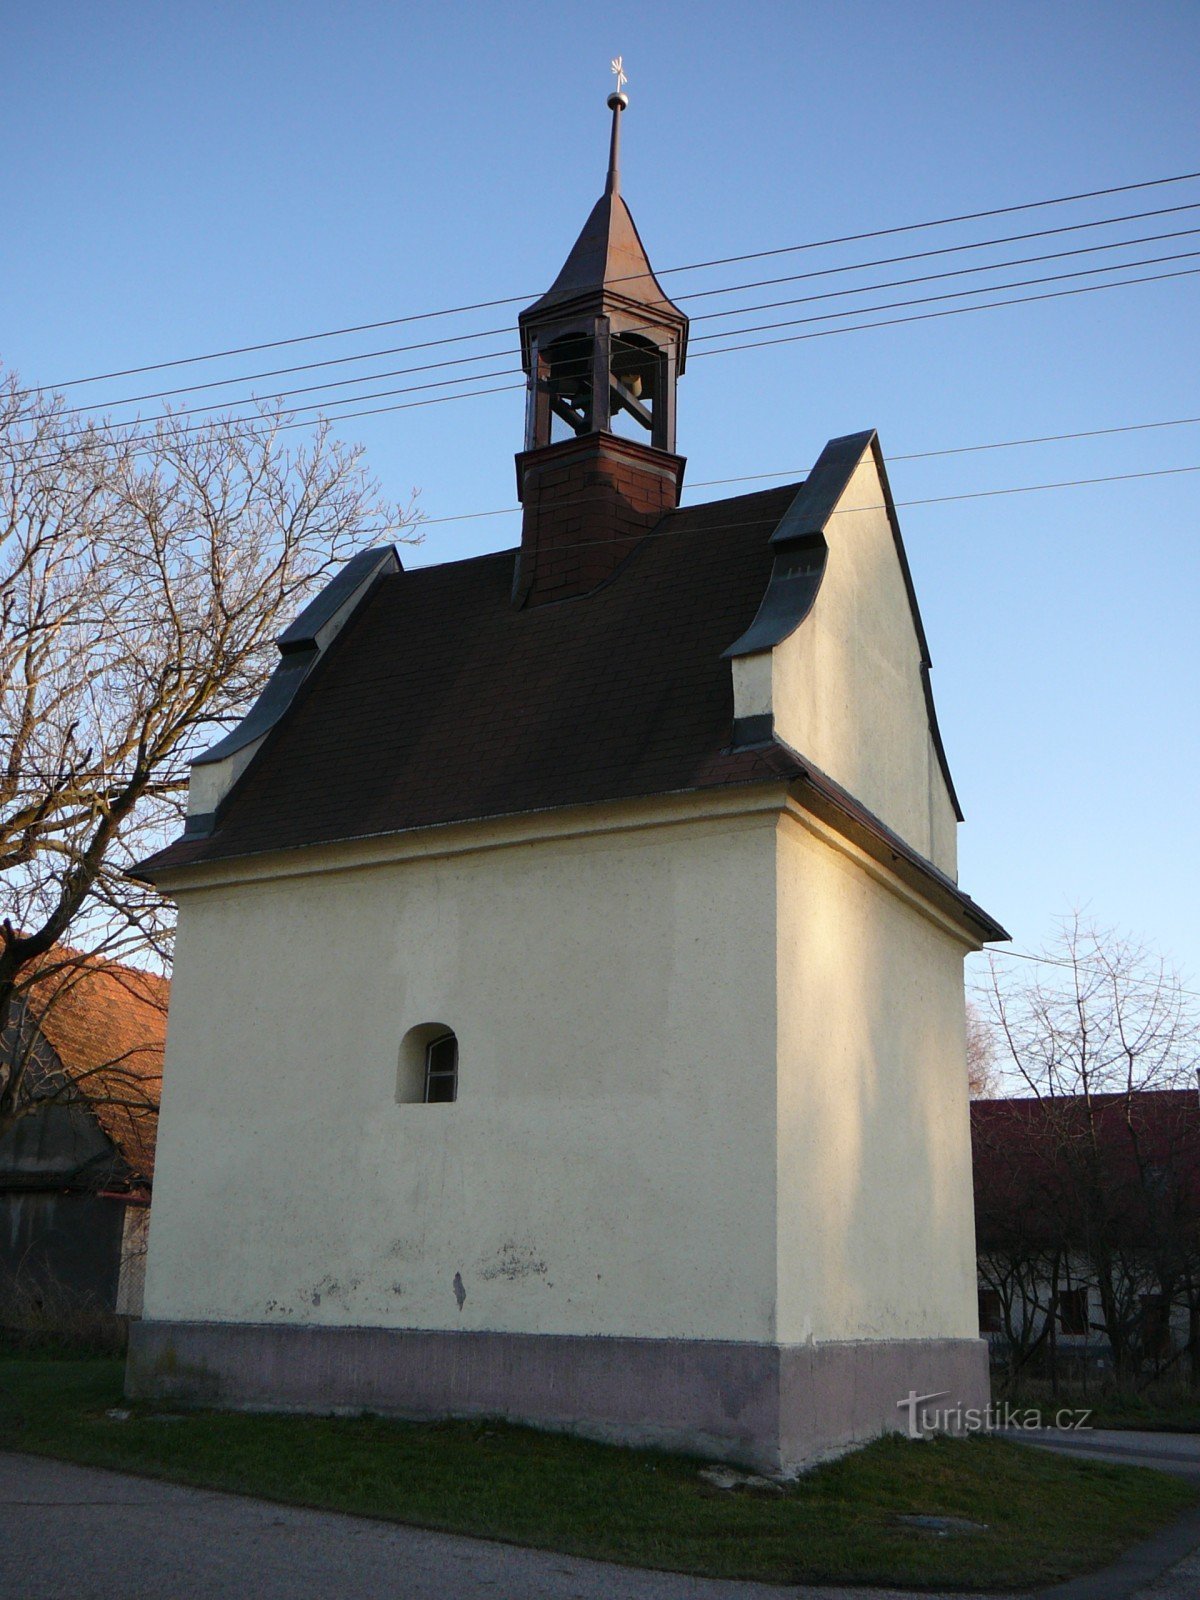 capela de São Fabián e São Sebastião em Žabni